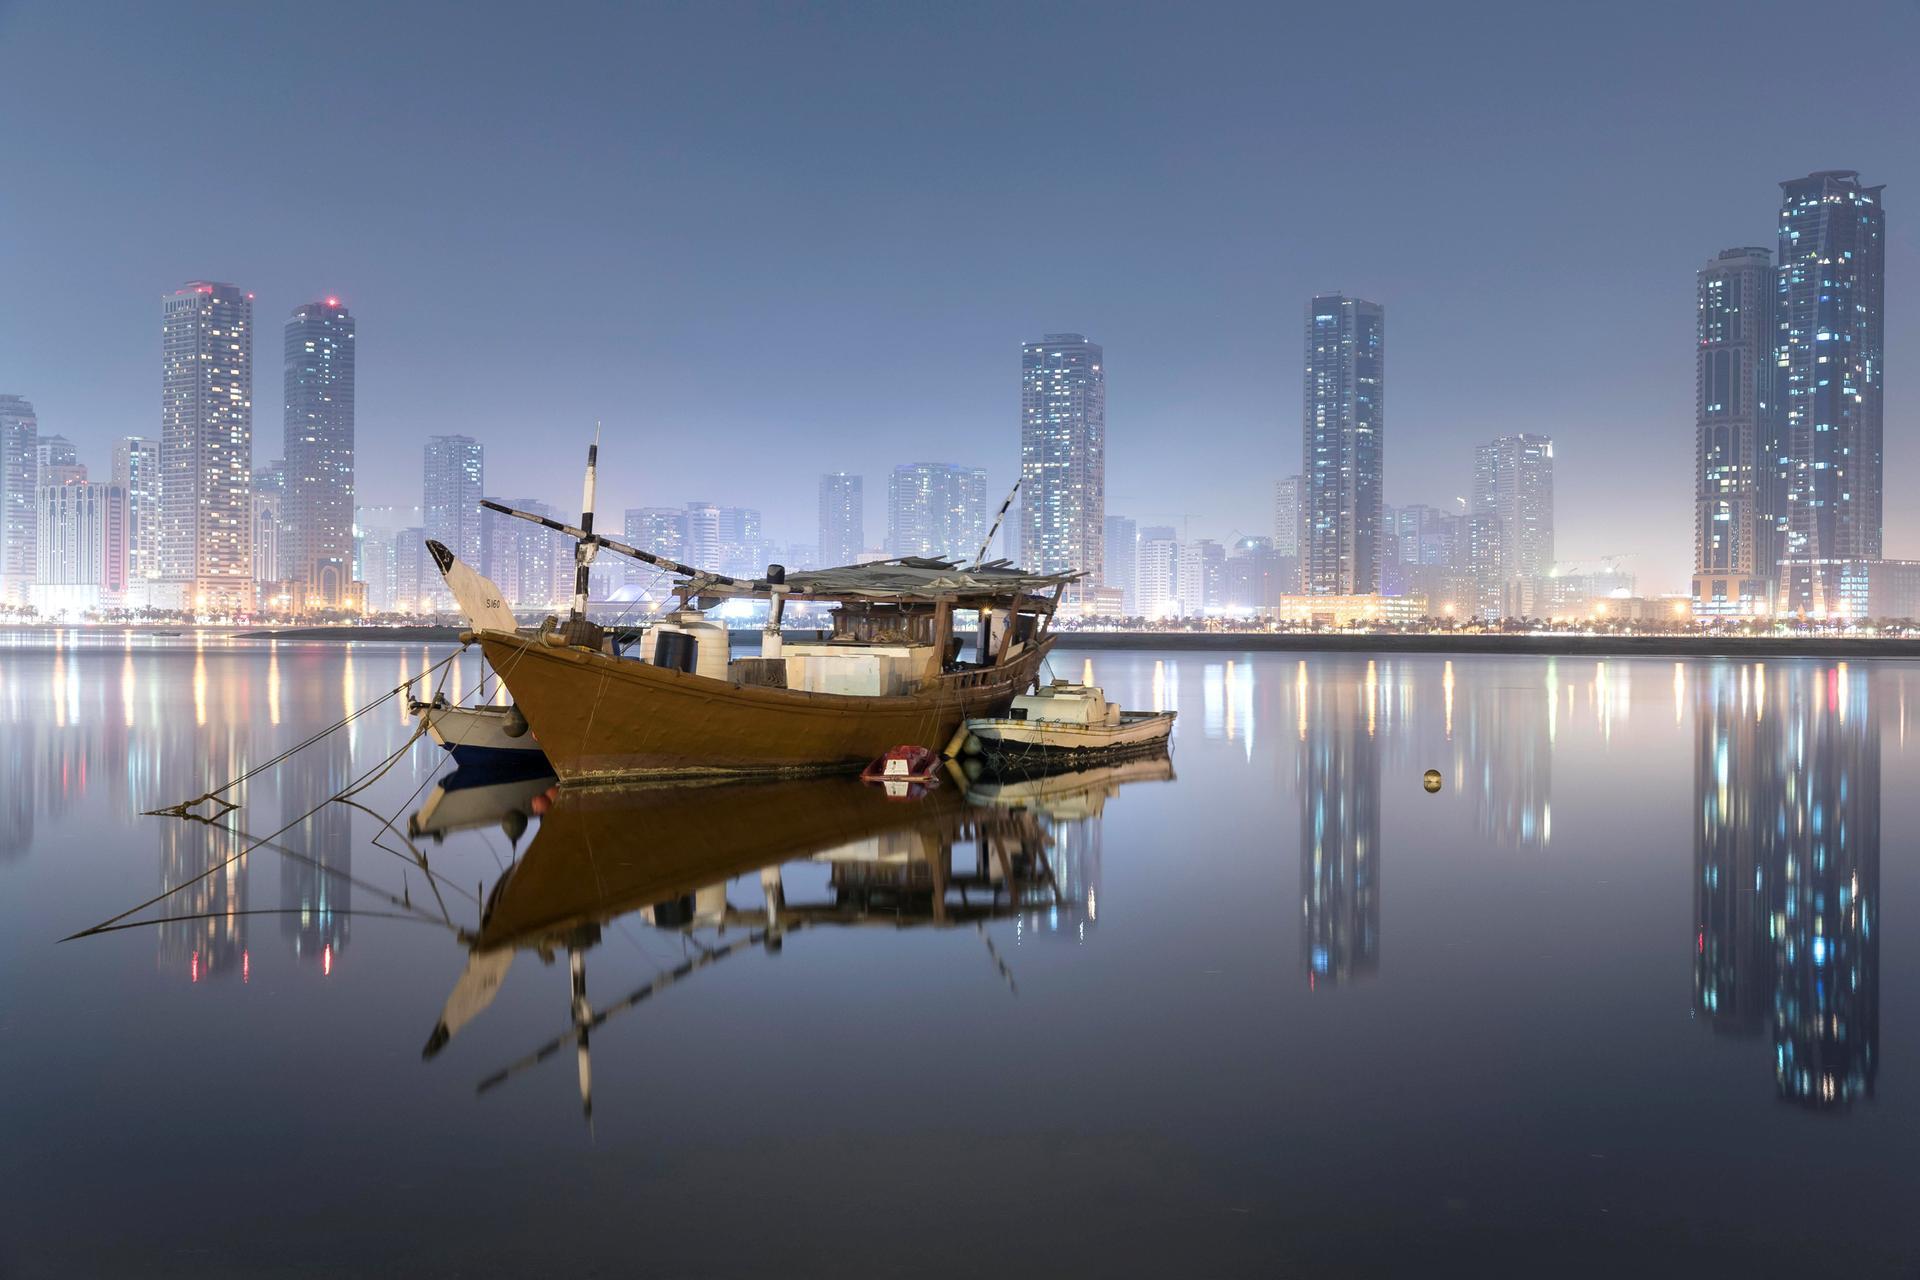 أجمل الصور التي التقطتها عدسات المصورين في دبي